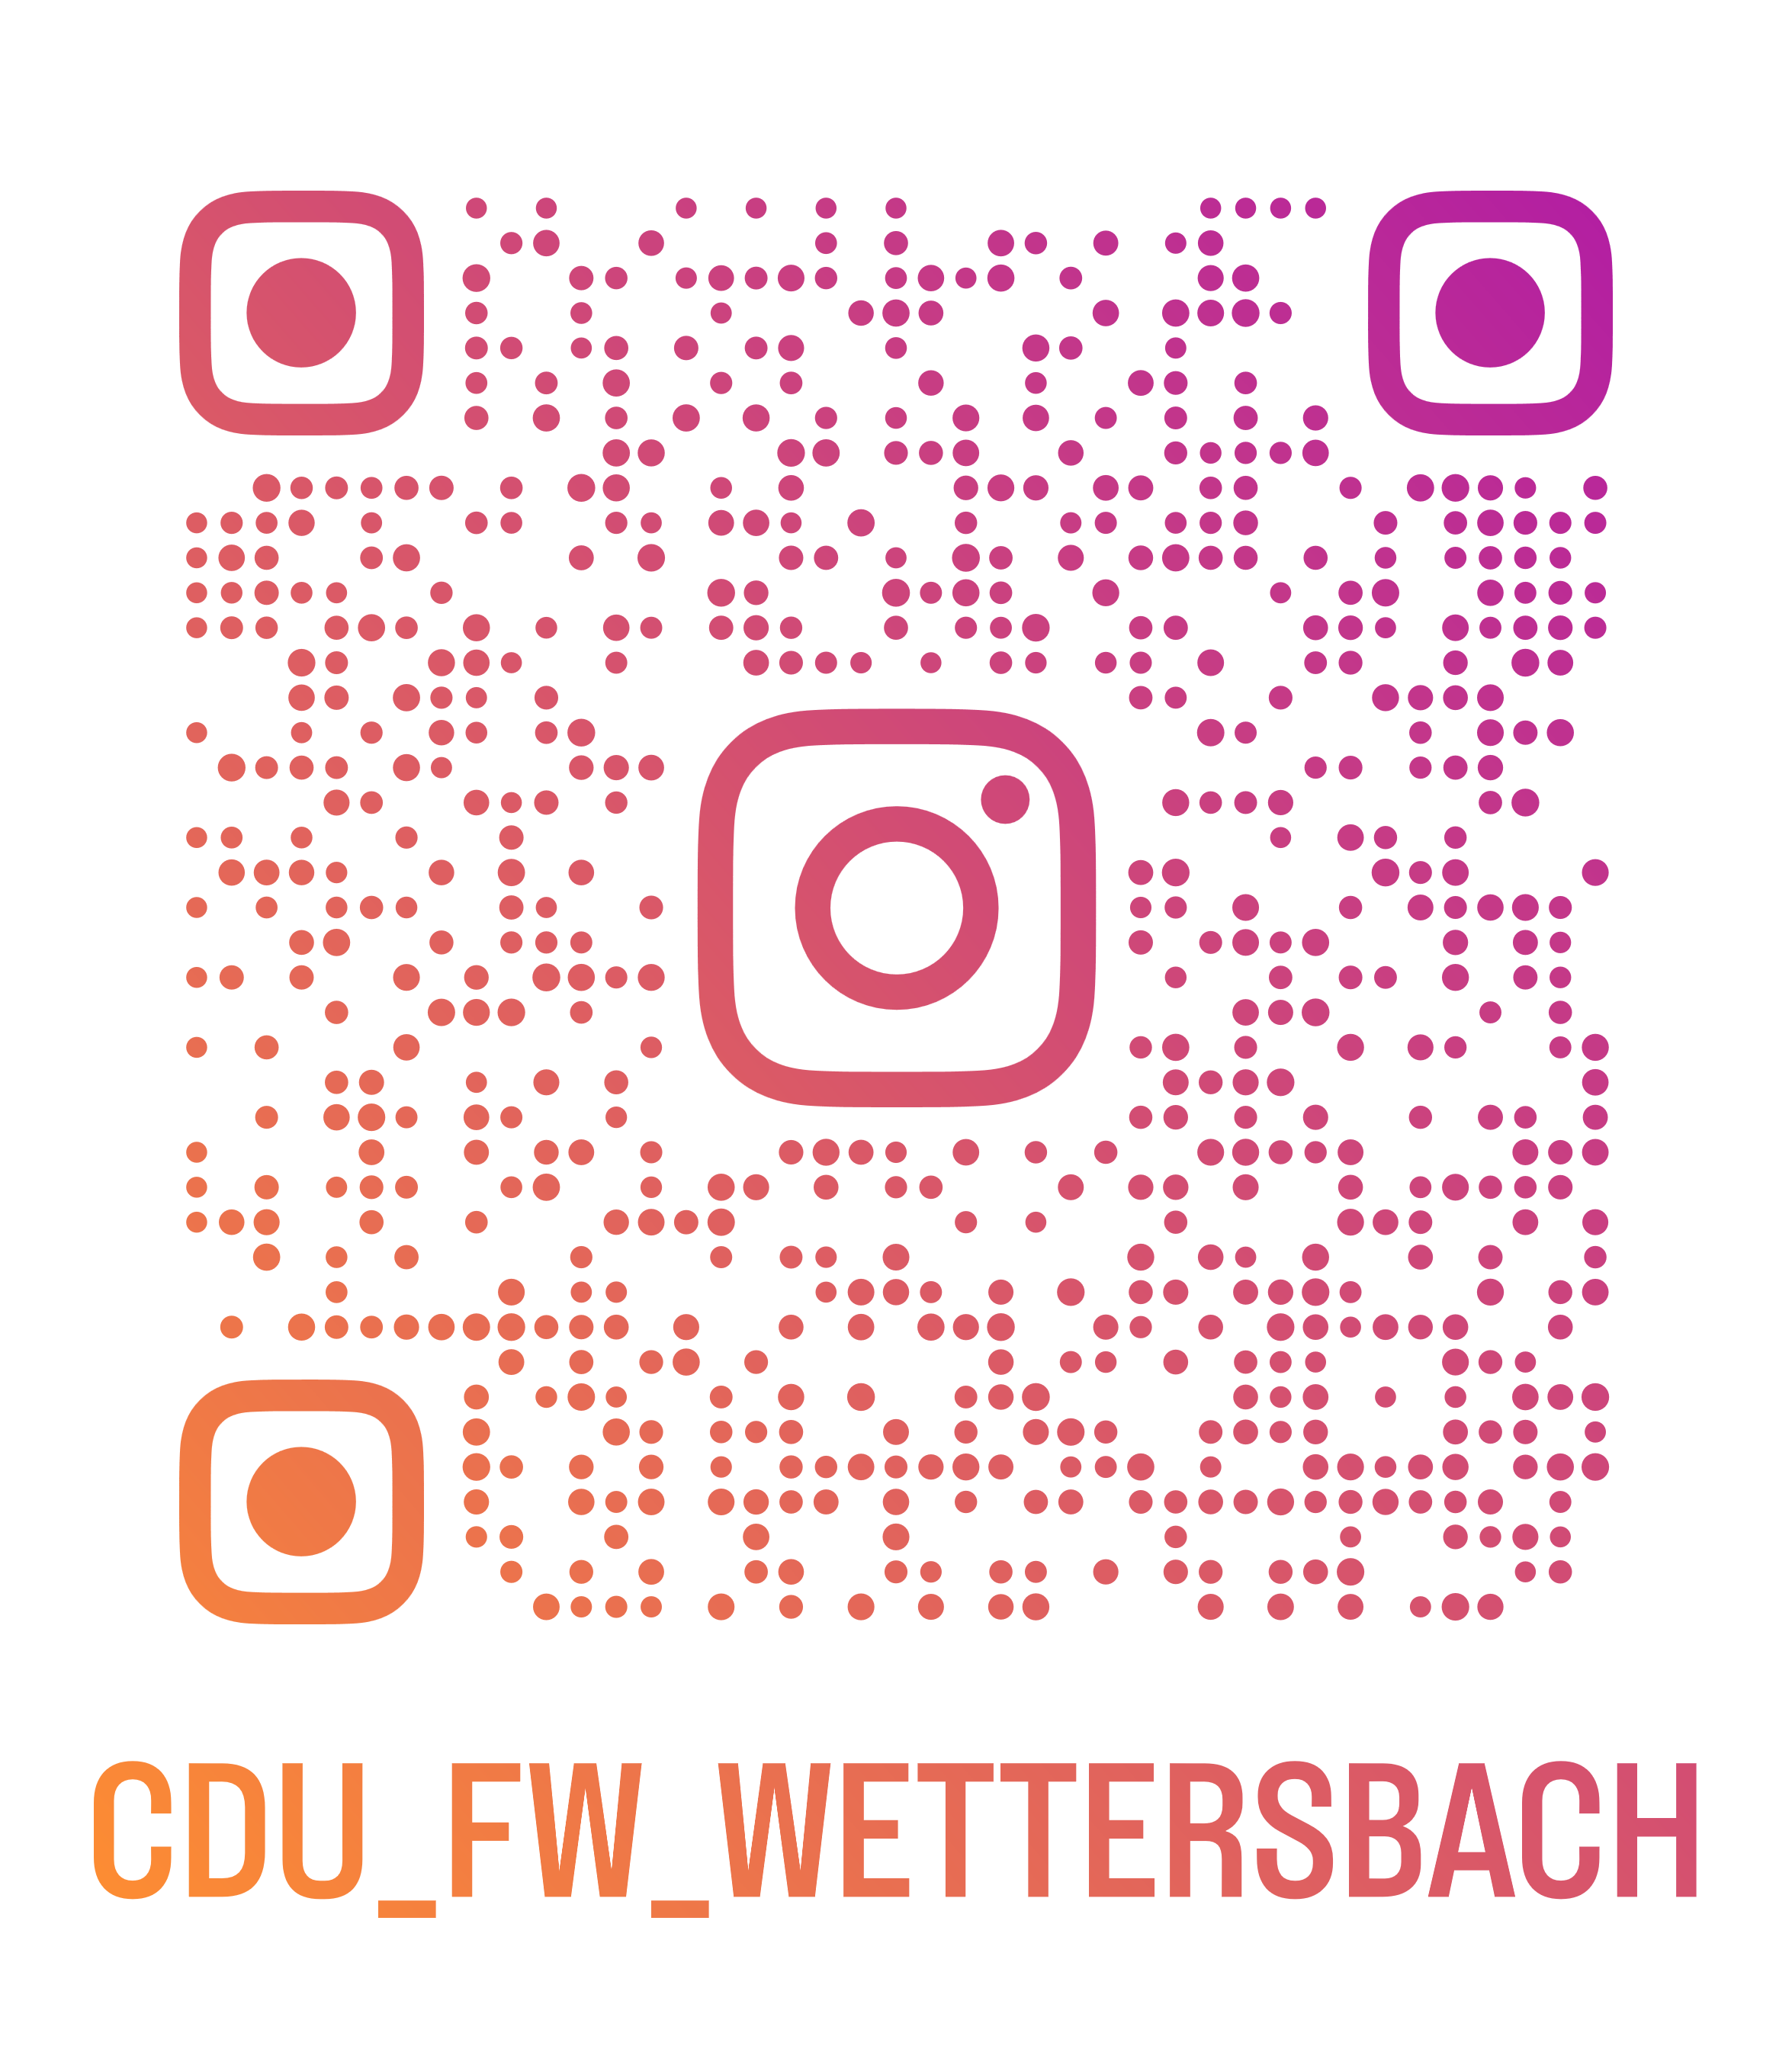 CDU/FW-Wettersbach bei Instagram